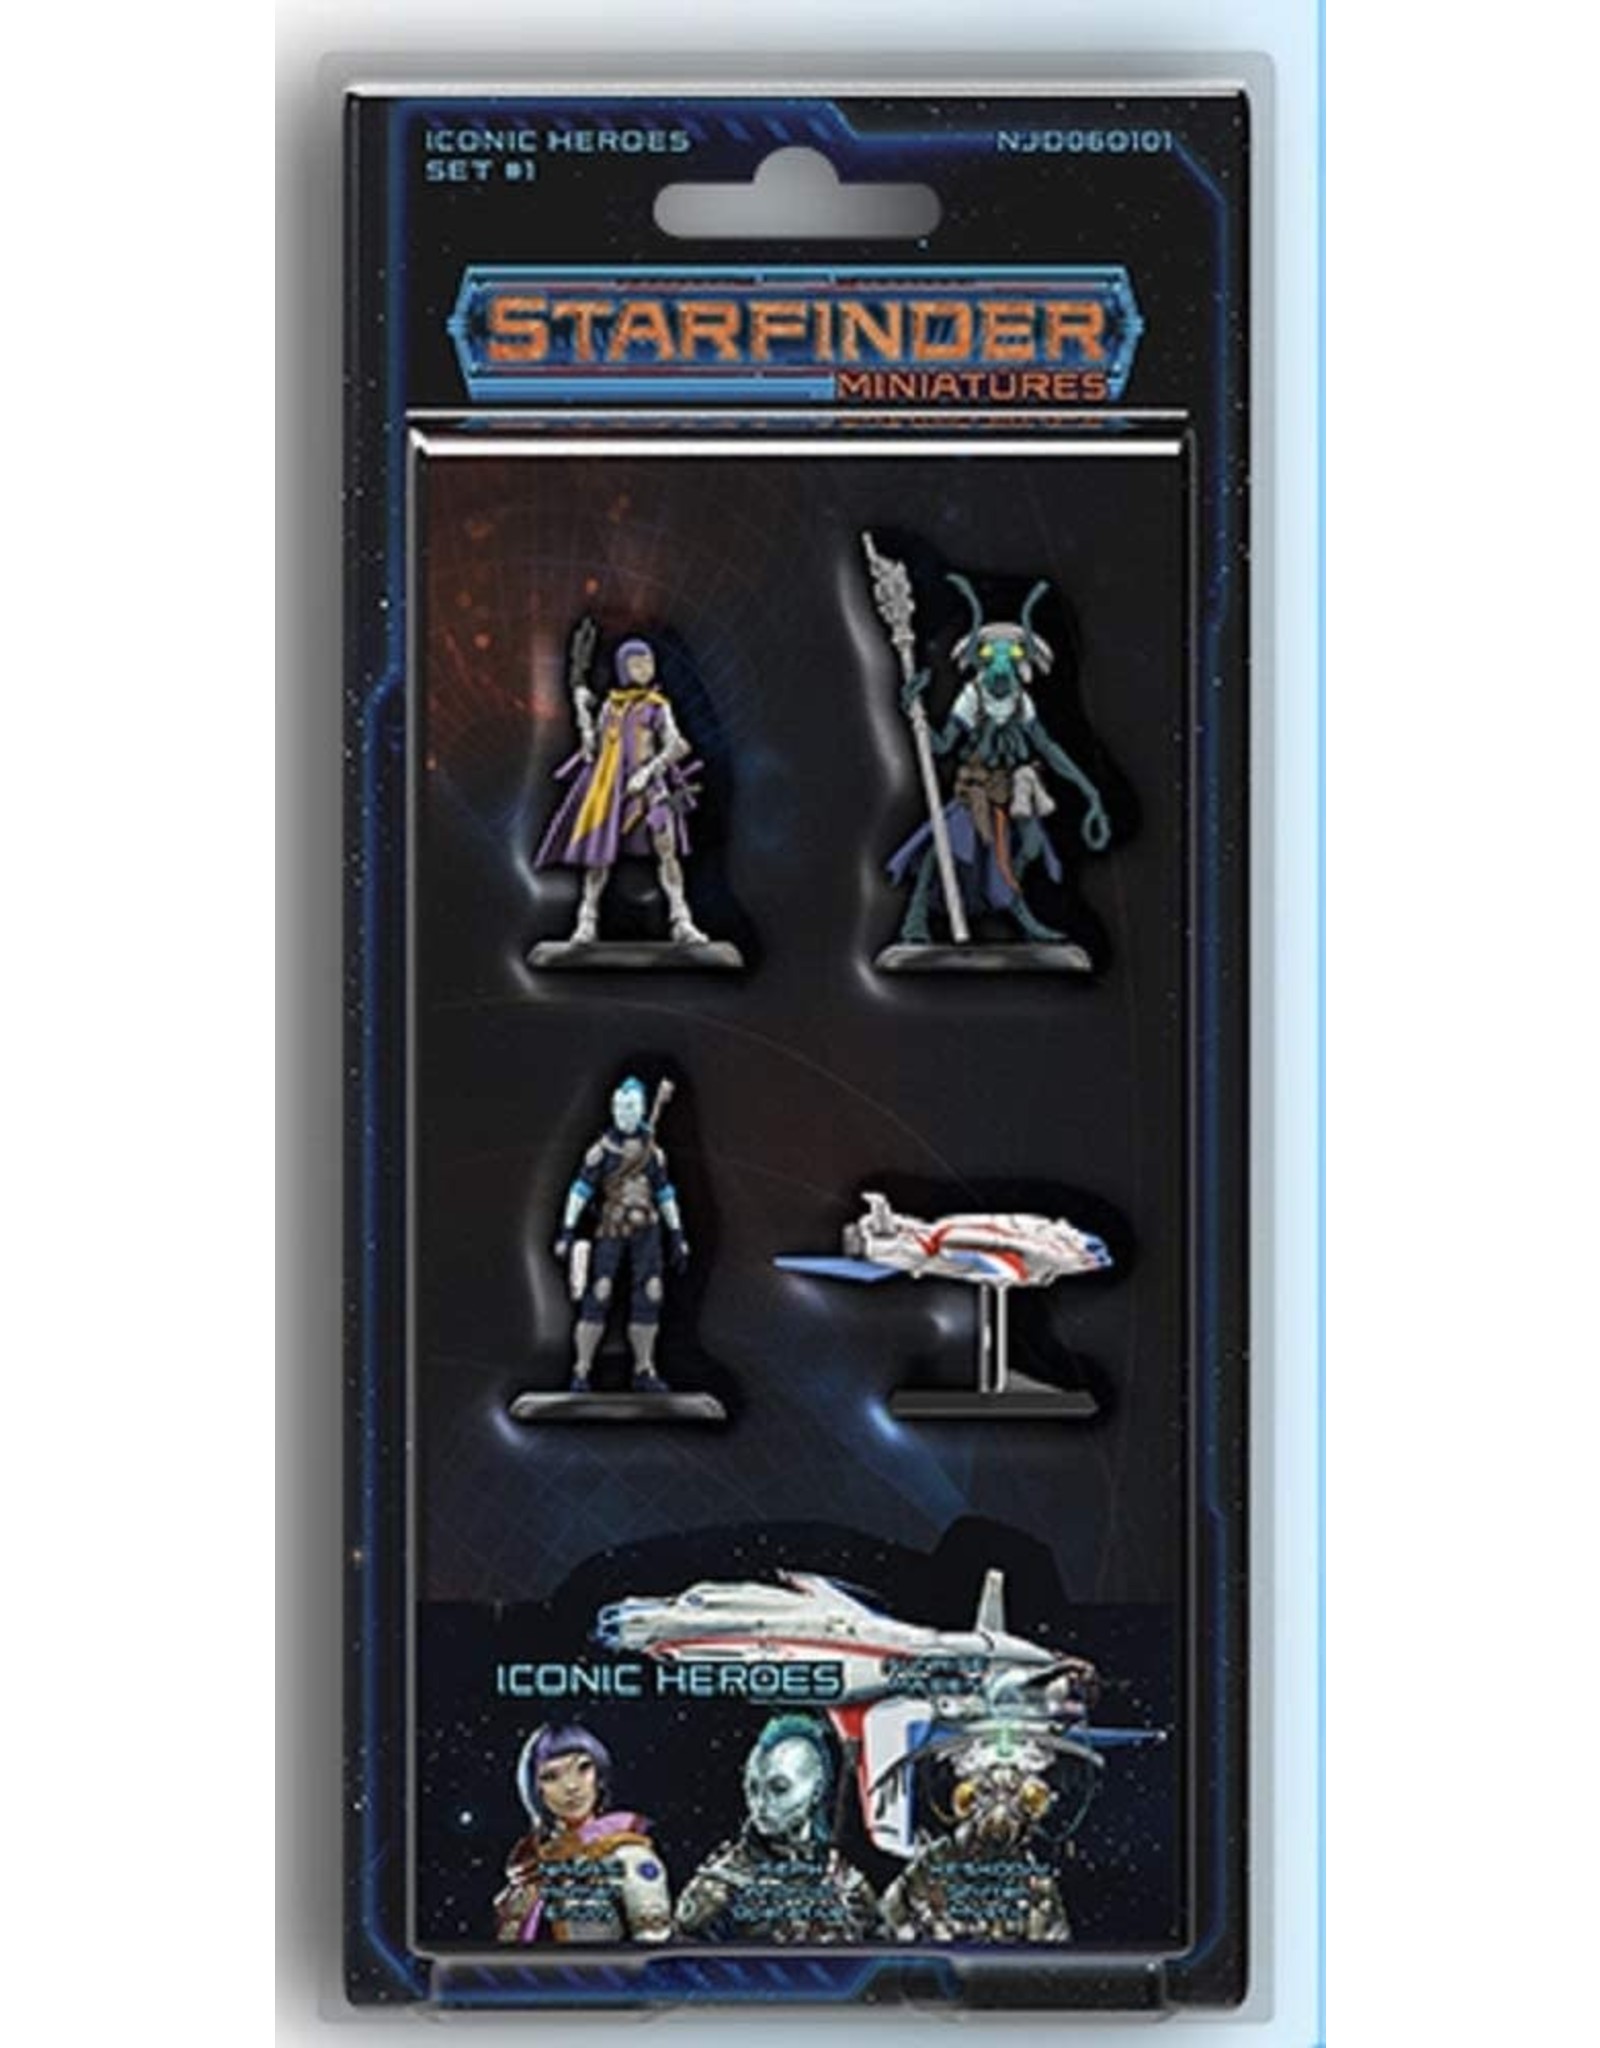 Starfinder Starfinder Miniatures Iconic Heroes Set 1